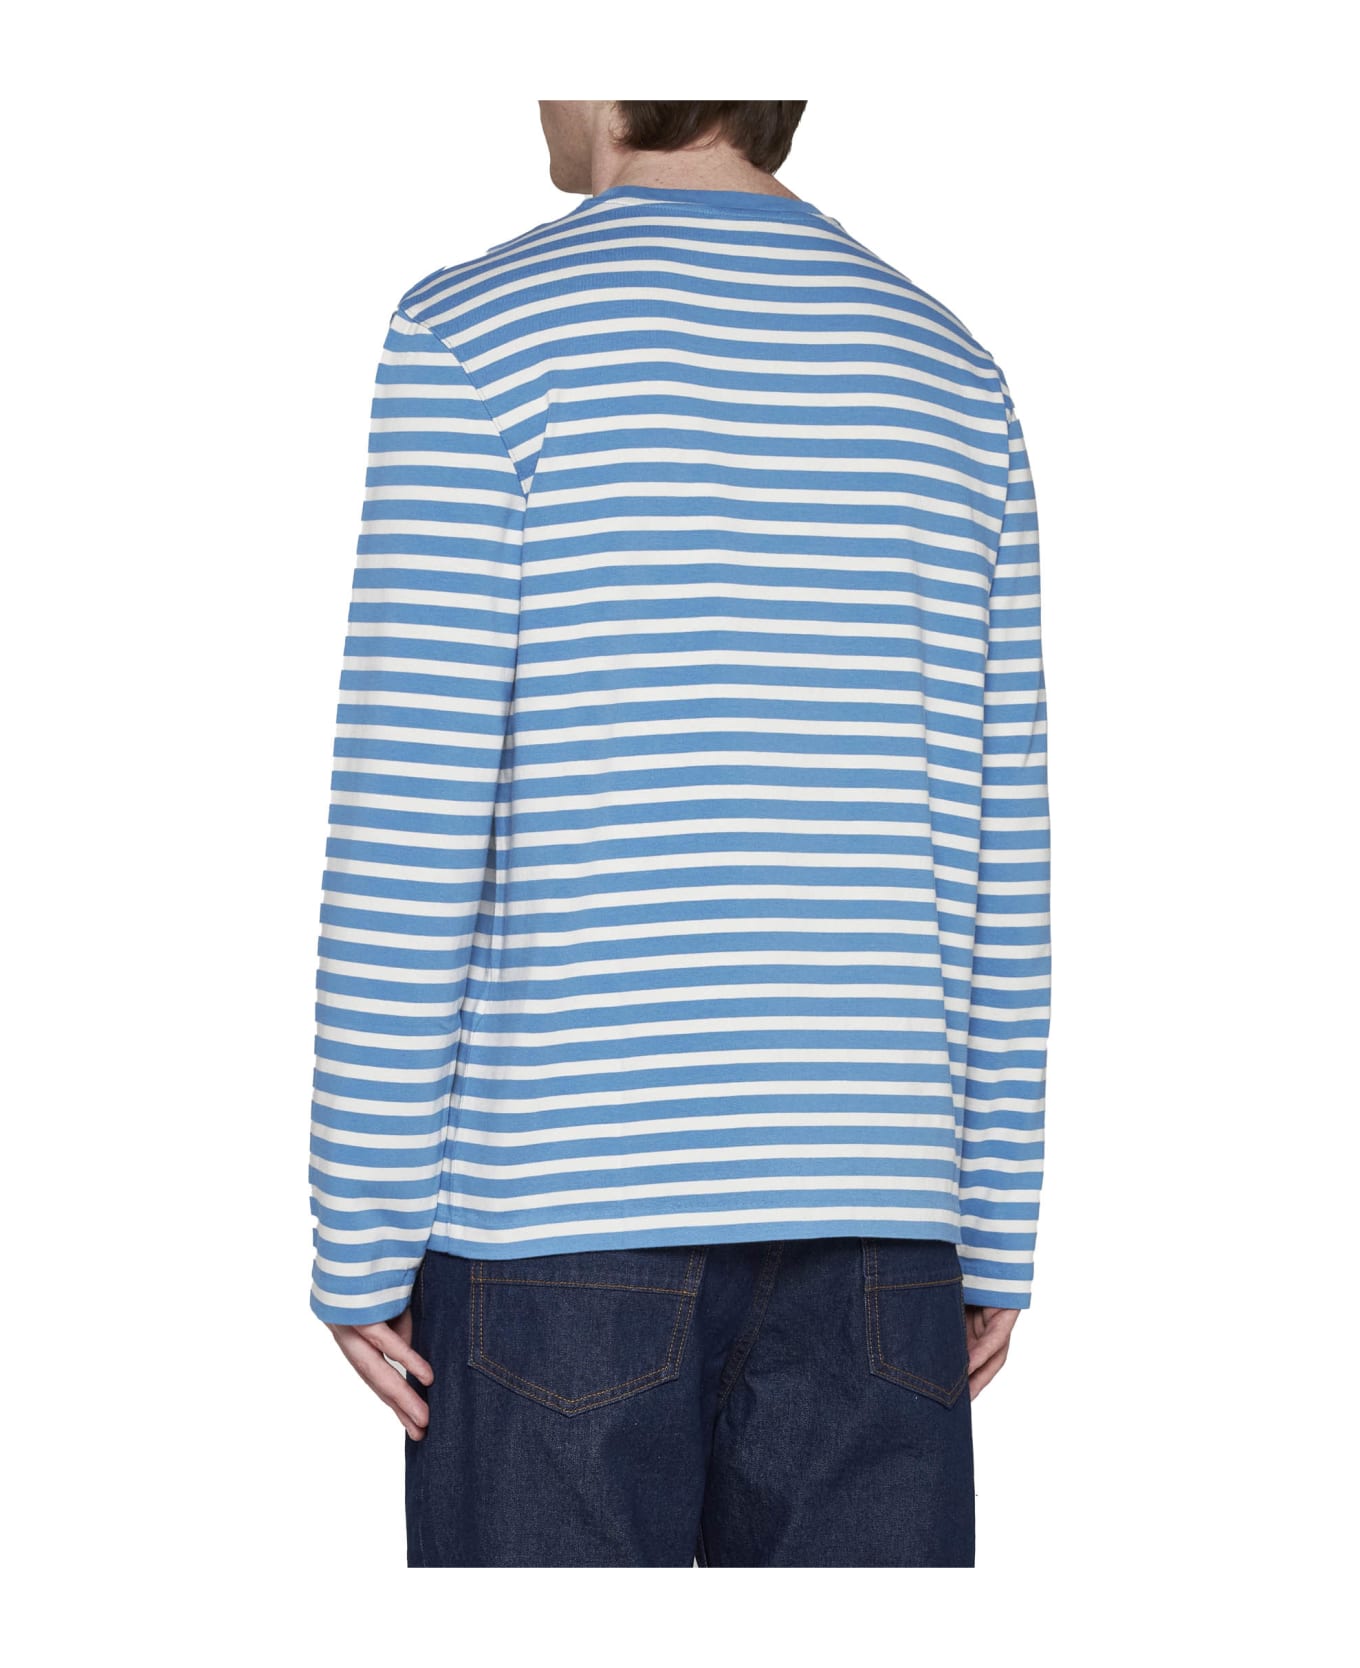 Maison Kitsuné T-Shirt - Drifter blue stripes